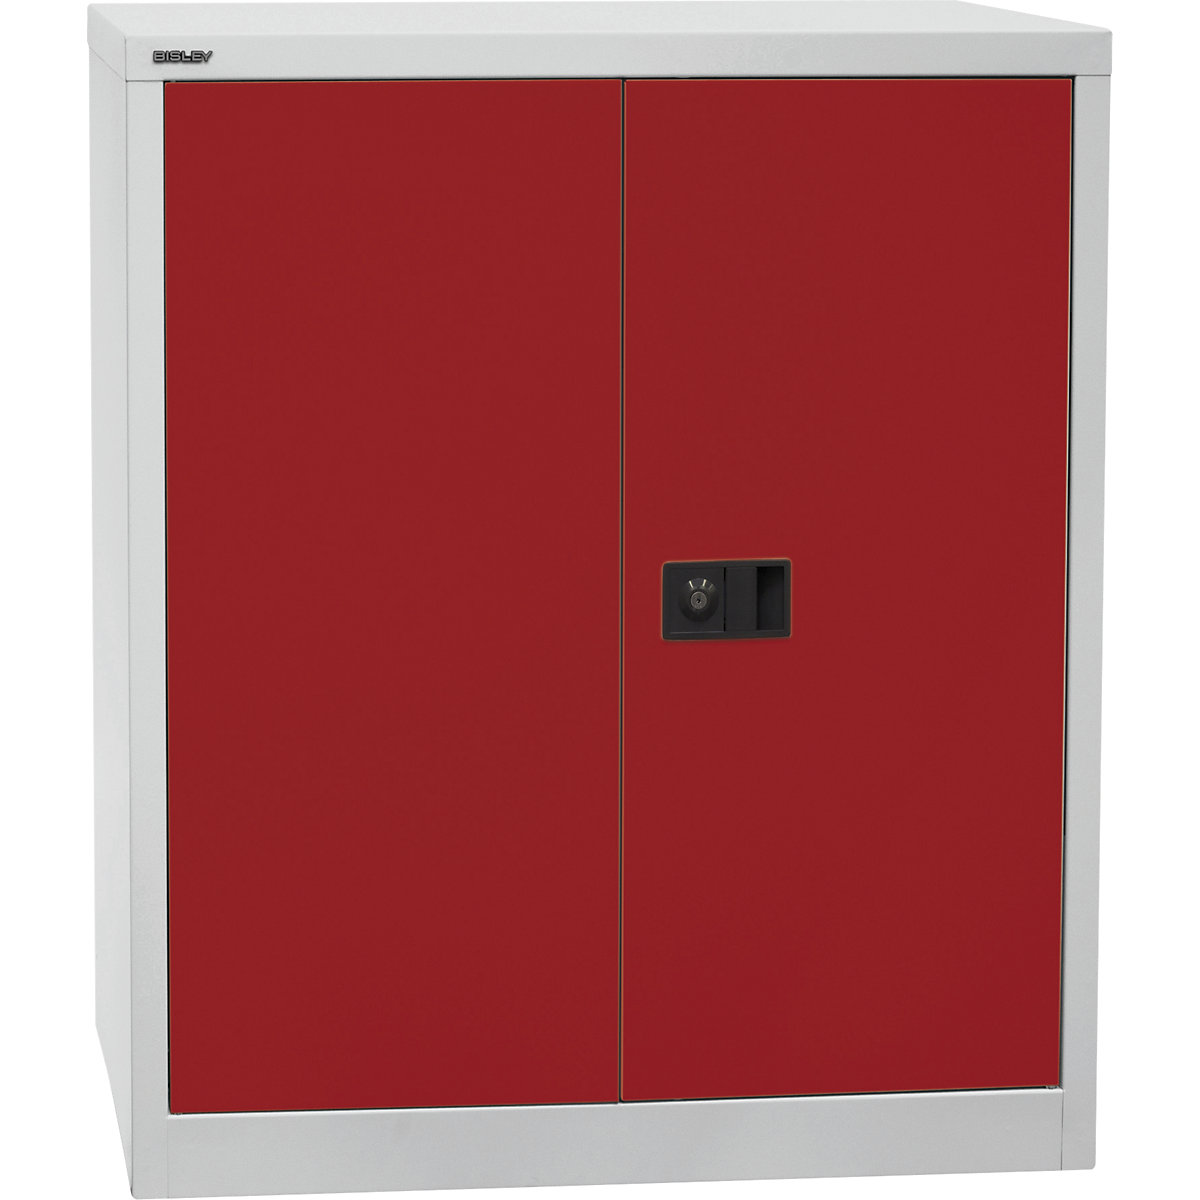 UNIVERSAL skriňa s krídlovými dverami – BISLEY, v x š x h 1000 x 914 x 400 mm, 1 pozinkovaná polica, 2 výšky zakladačov, svetlošedá / kardinálska červená-4